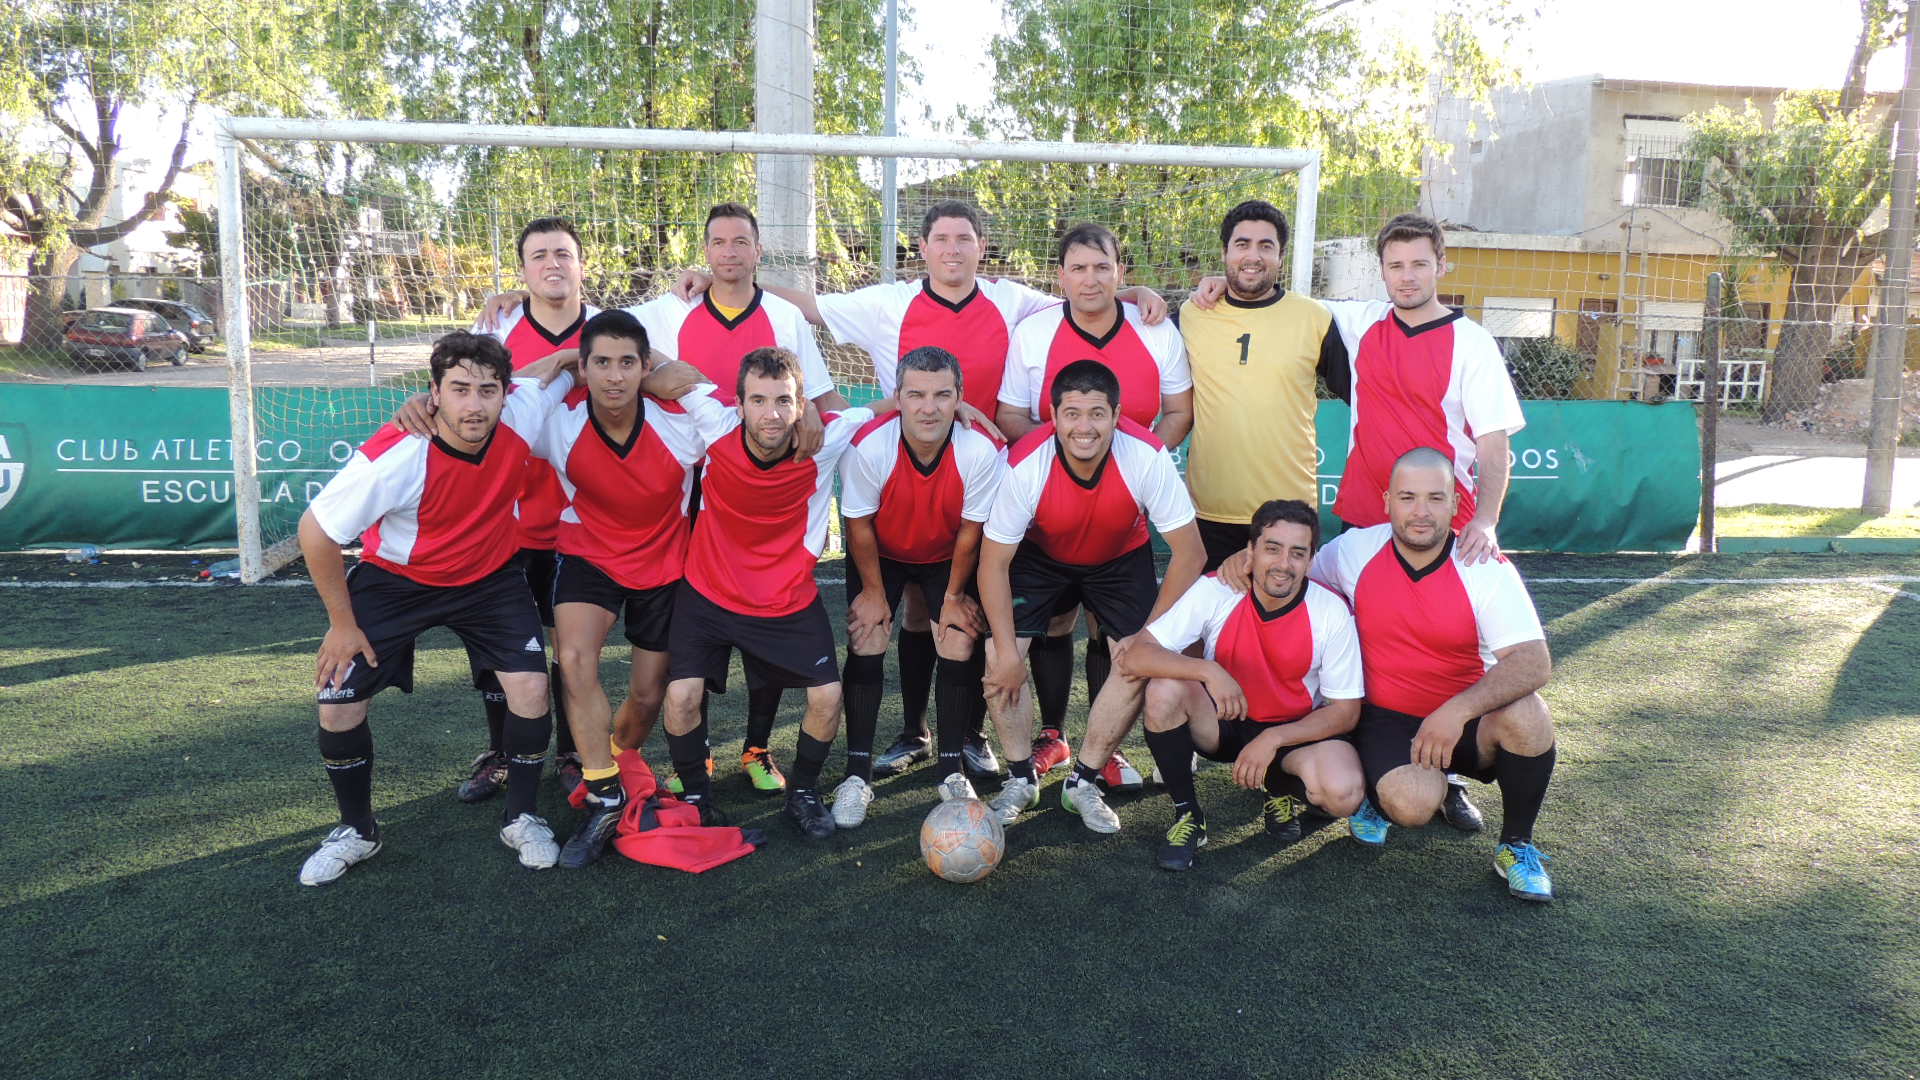 Torneo de futbol 2014: Resultados 1era Fecha y próximos partidos...